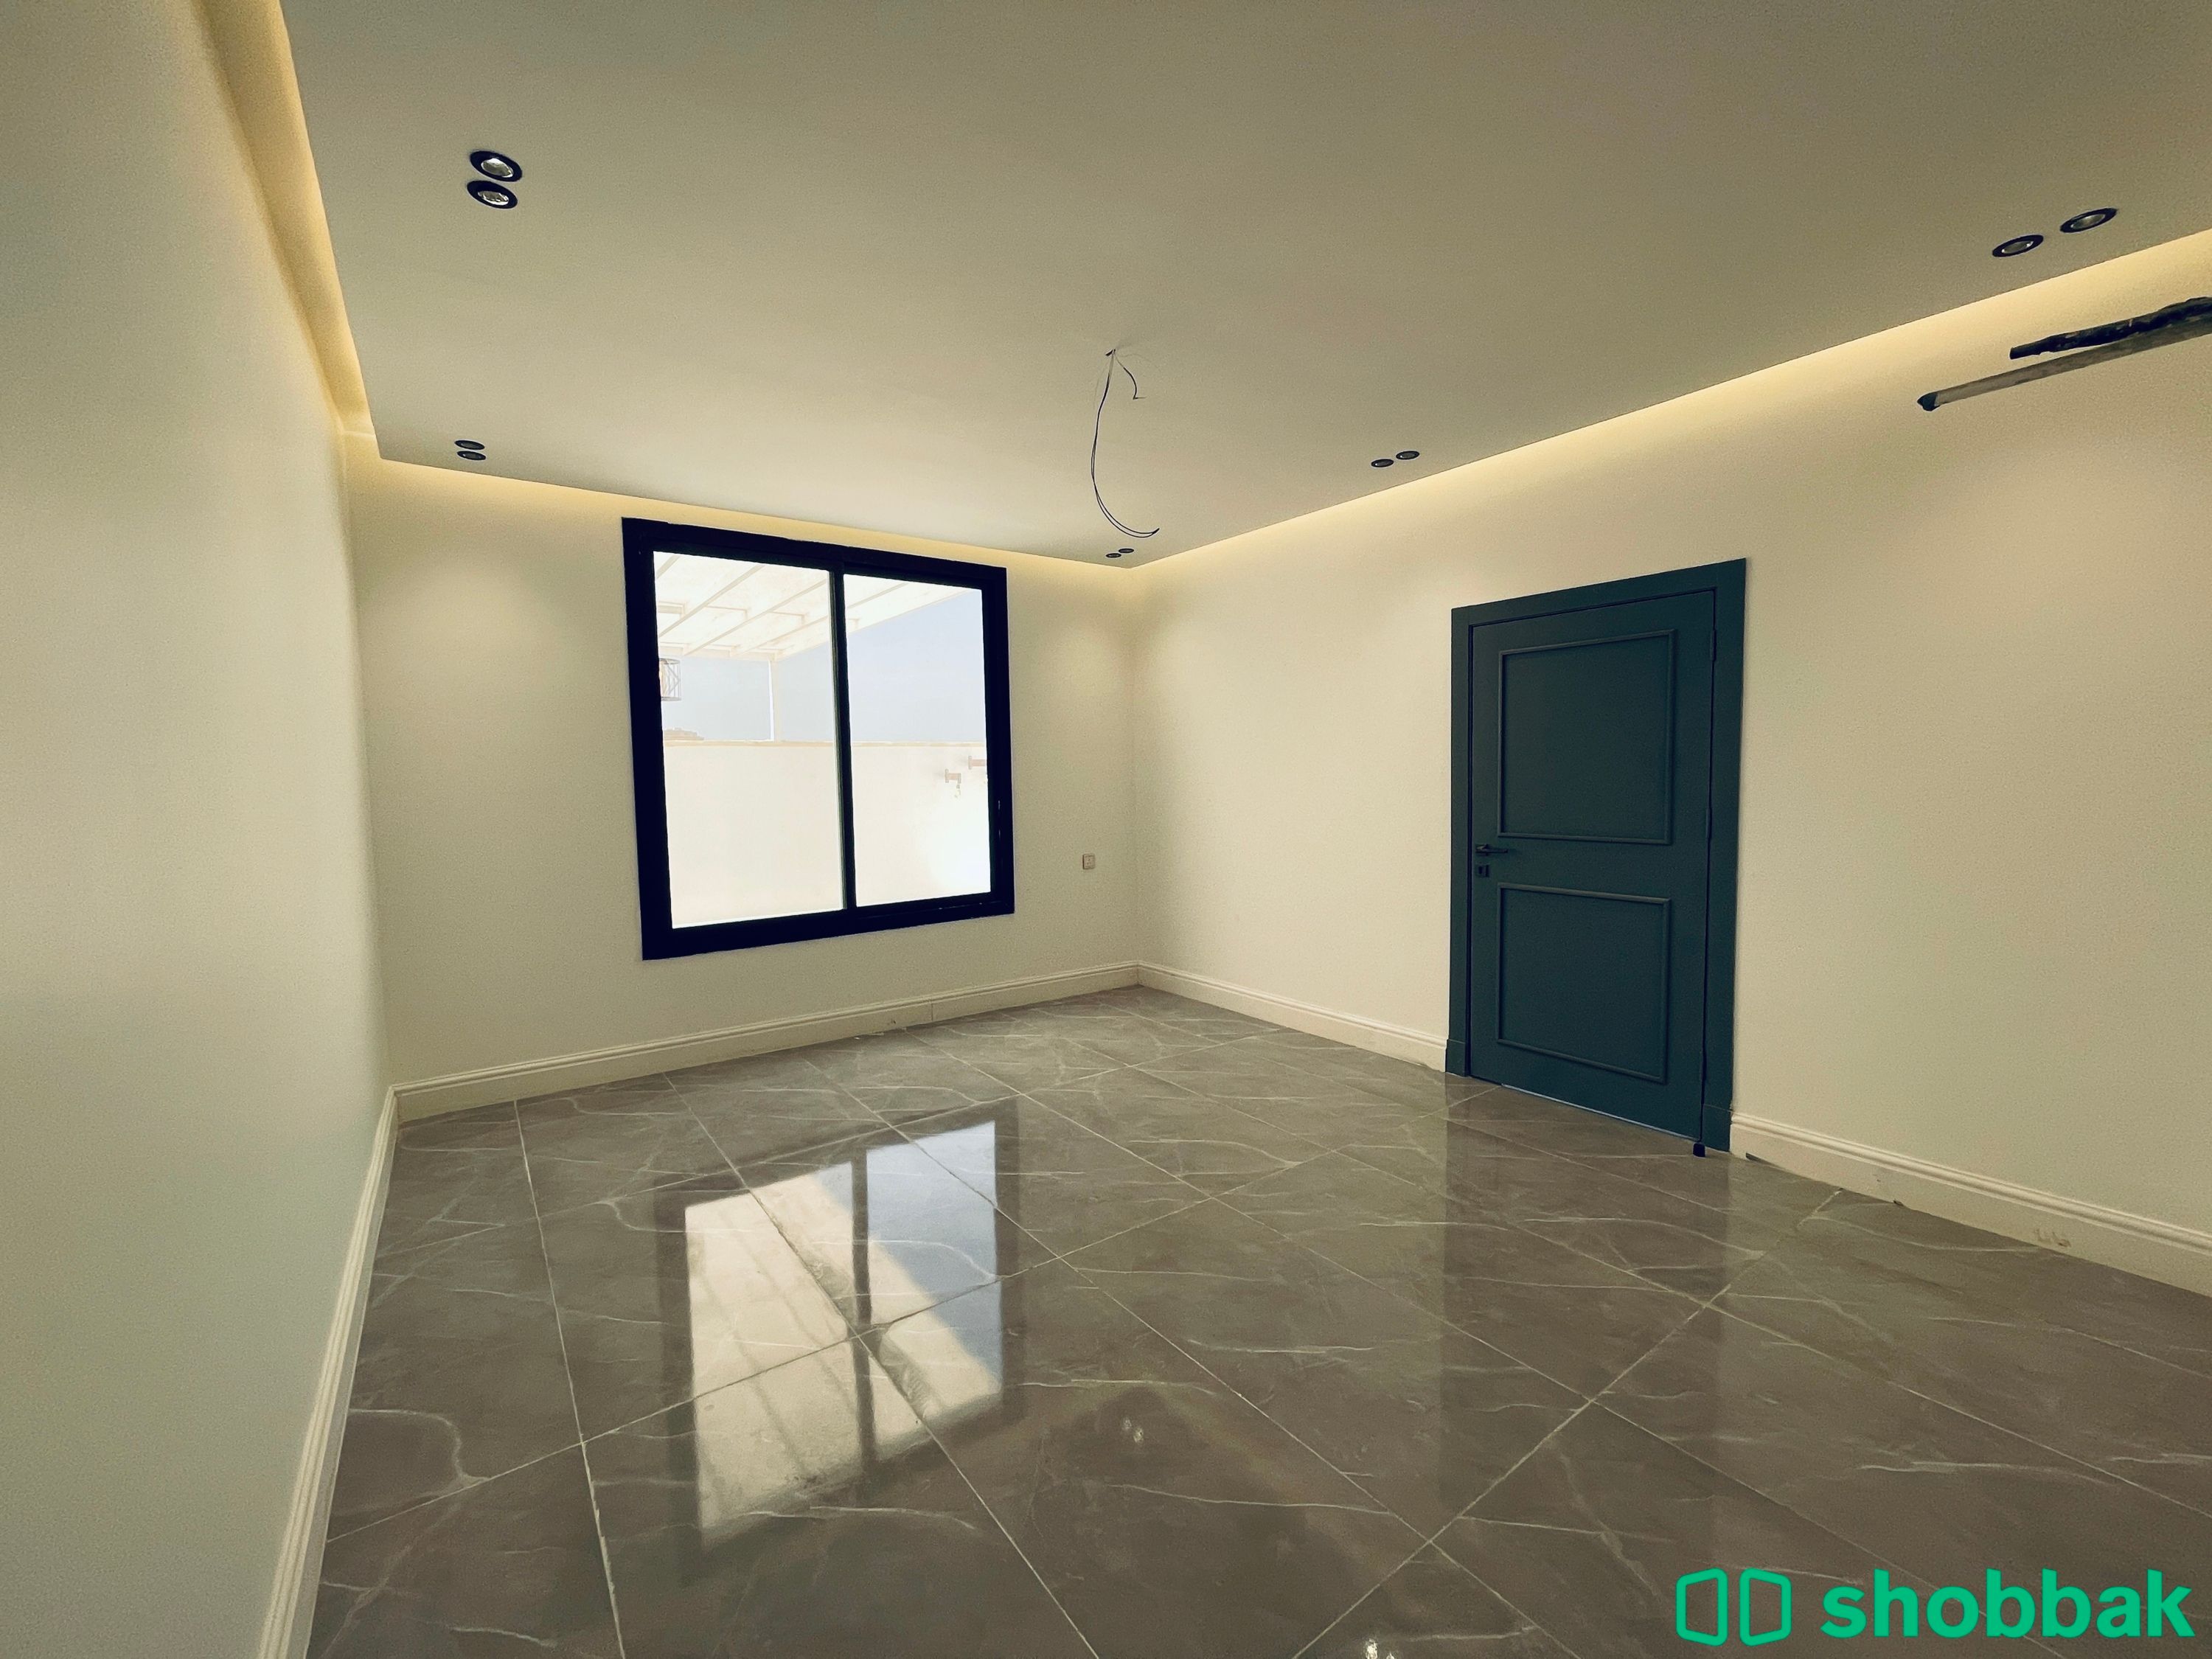 شقة 4 غرف بحي السلامة للبيع تقبل البنك جاهزة للسكن  Shobbak Saudi Arabia